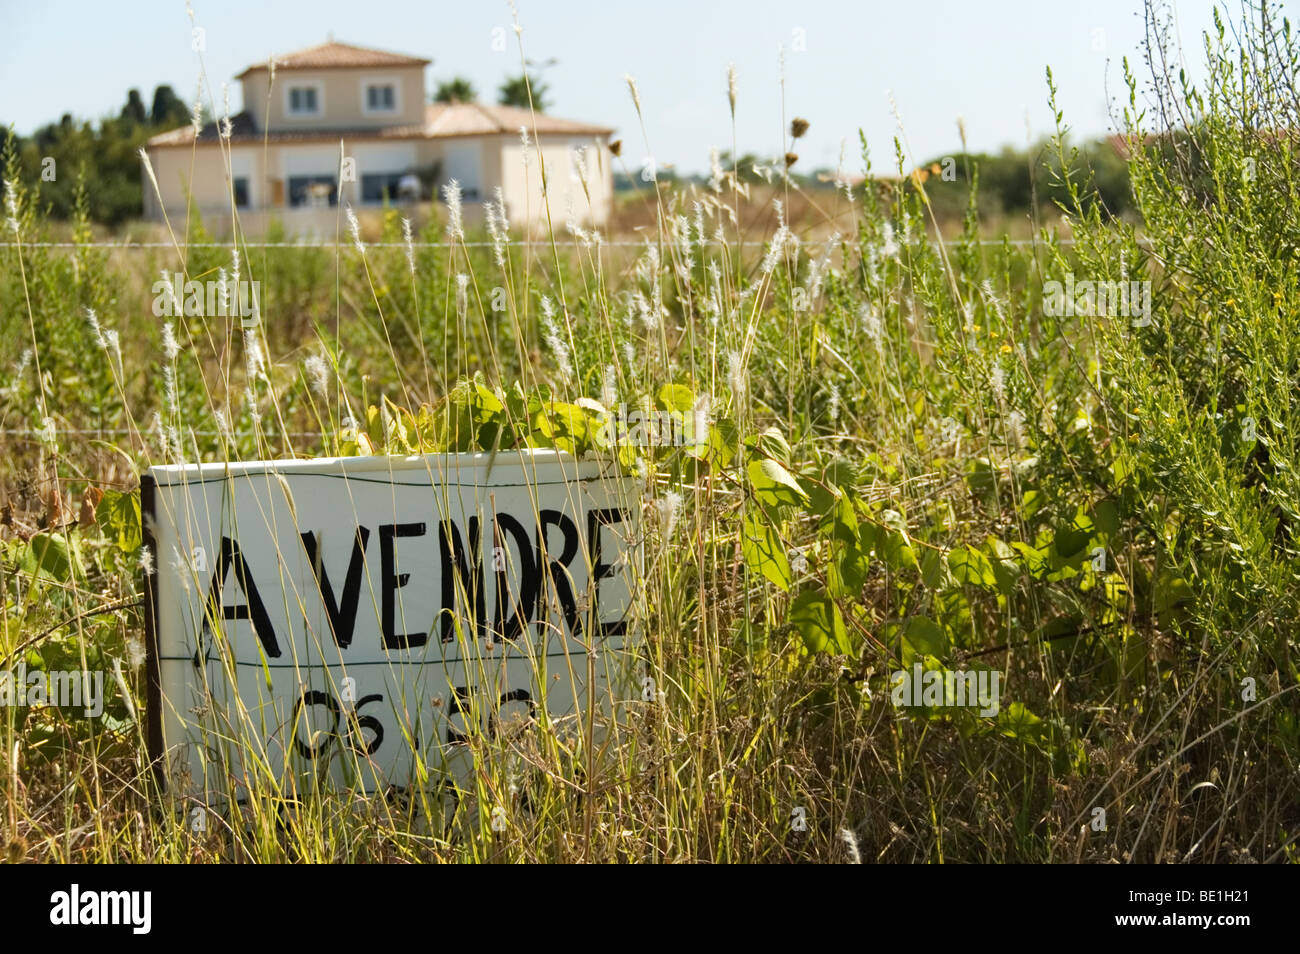 Für Verkauf Zeichen auf Immobilien in Languedoc-Roussillon im Süden Frankreichs. Stockfoto